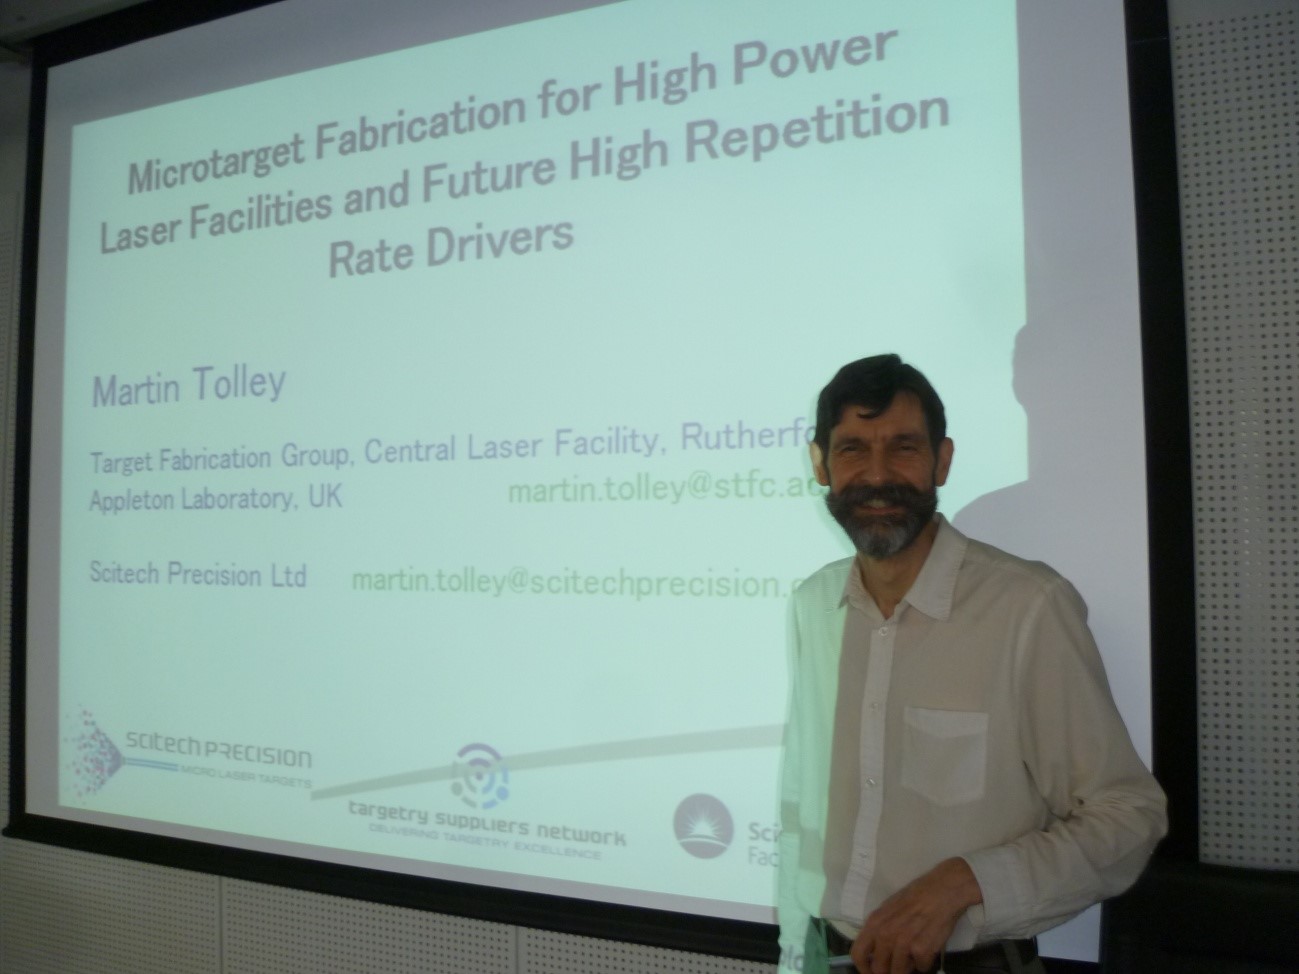 第69回KPSIセミナー Dr. Martin Tolley, Target Fabrication Group, Central Laser Facility, Rutherford Appleton Laboratory, United Kingdom